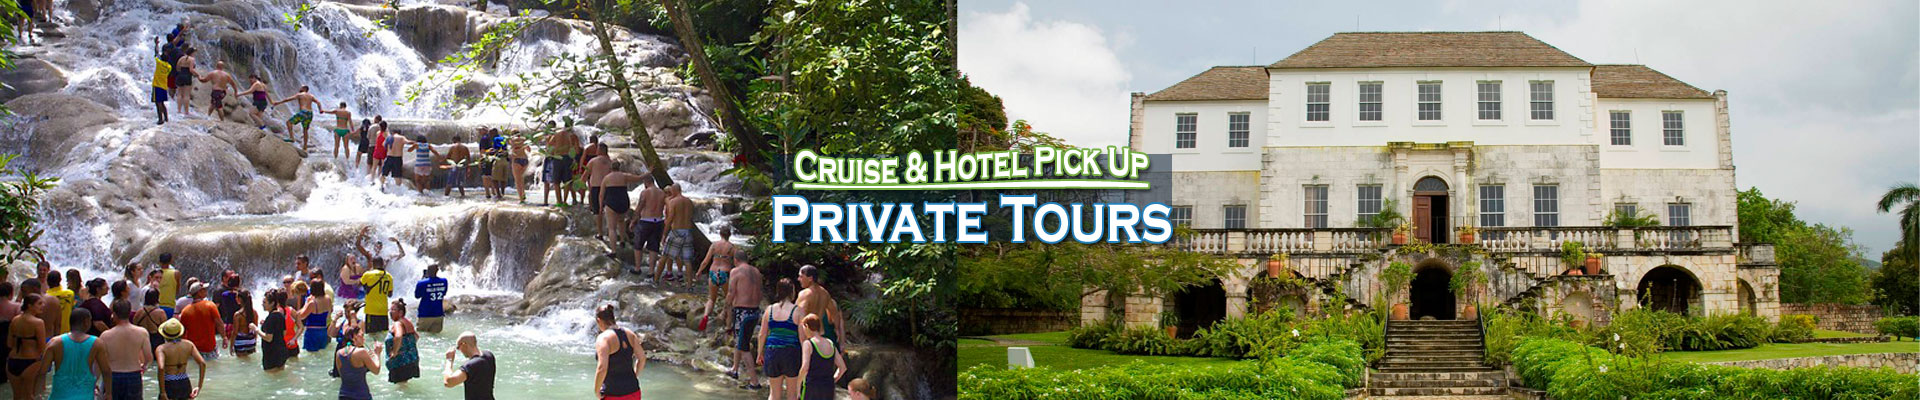 Jamaica private tours